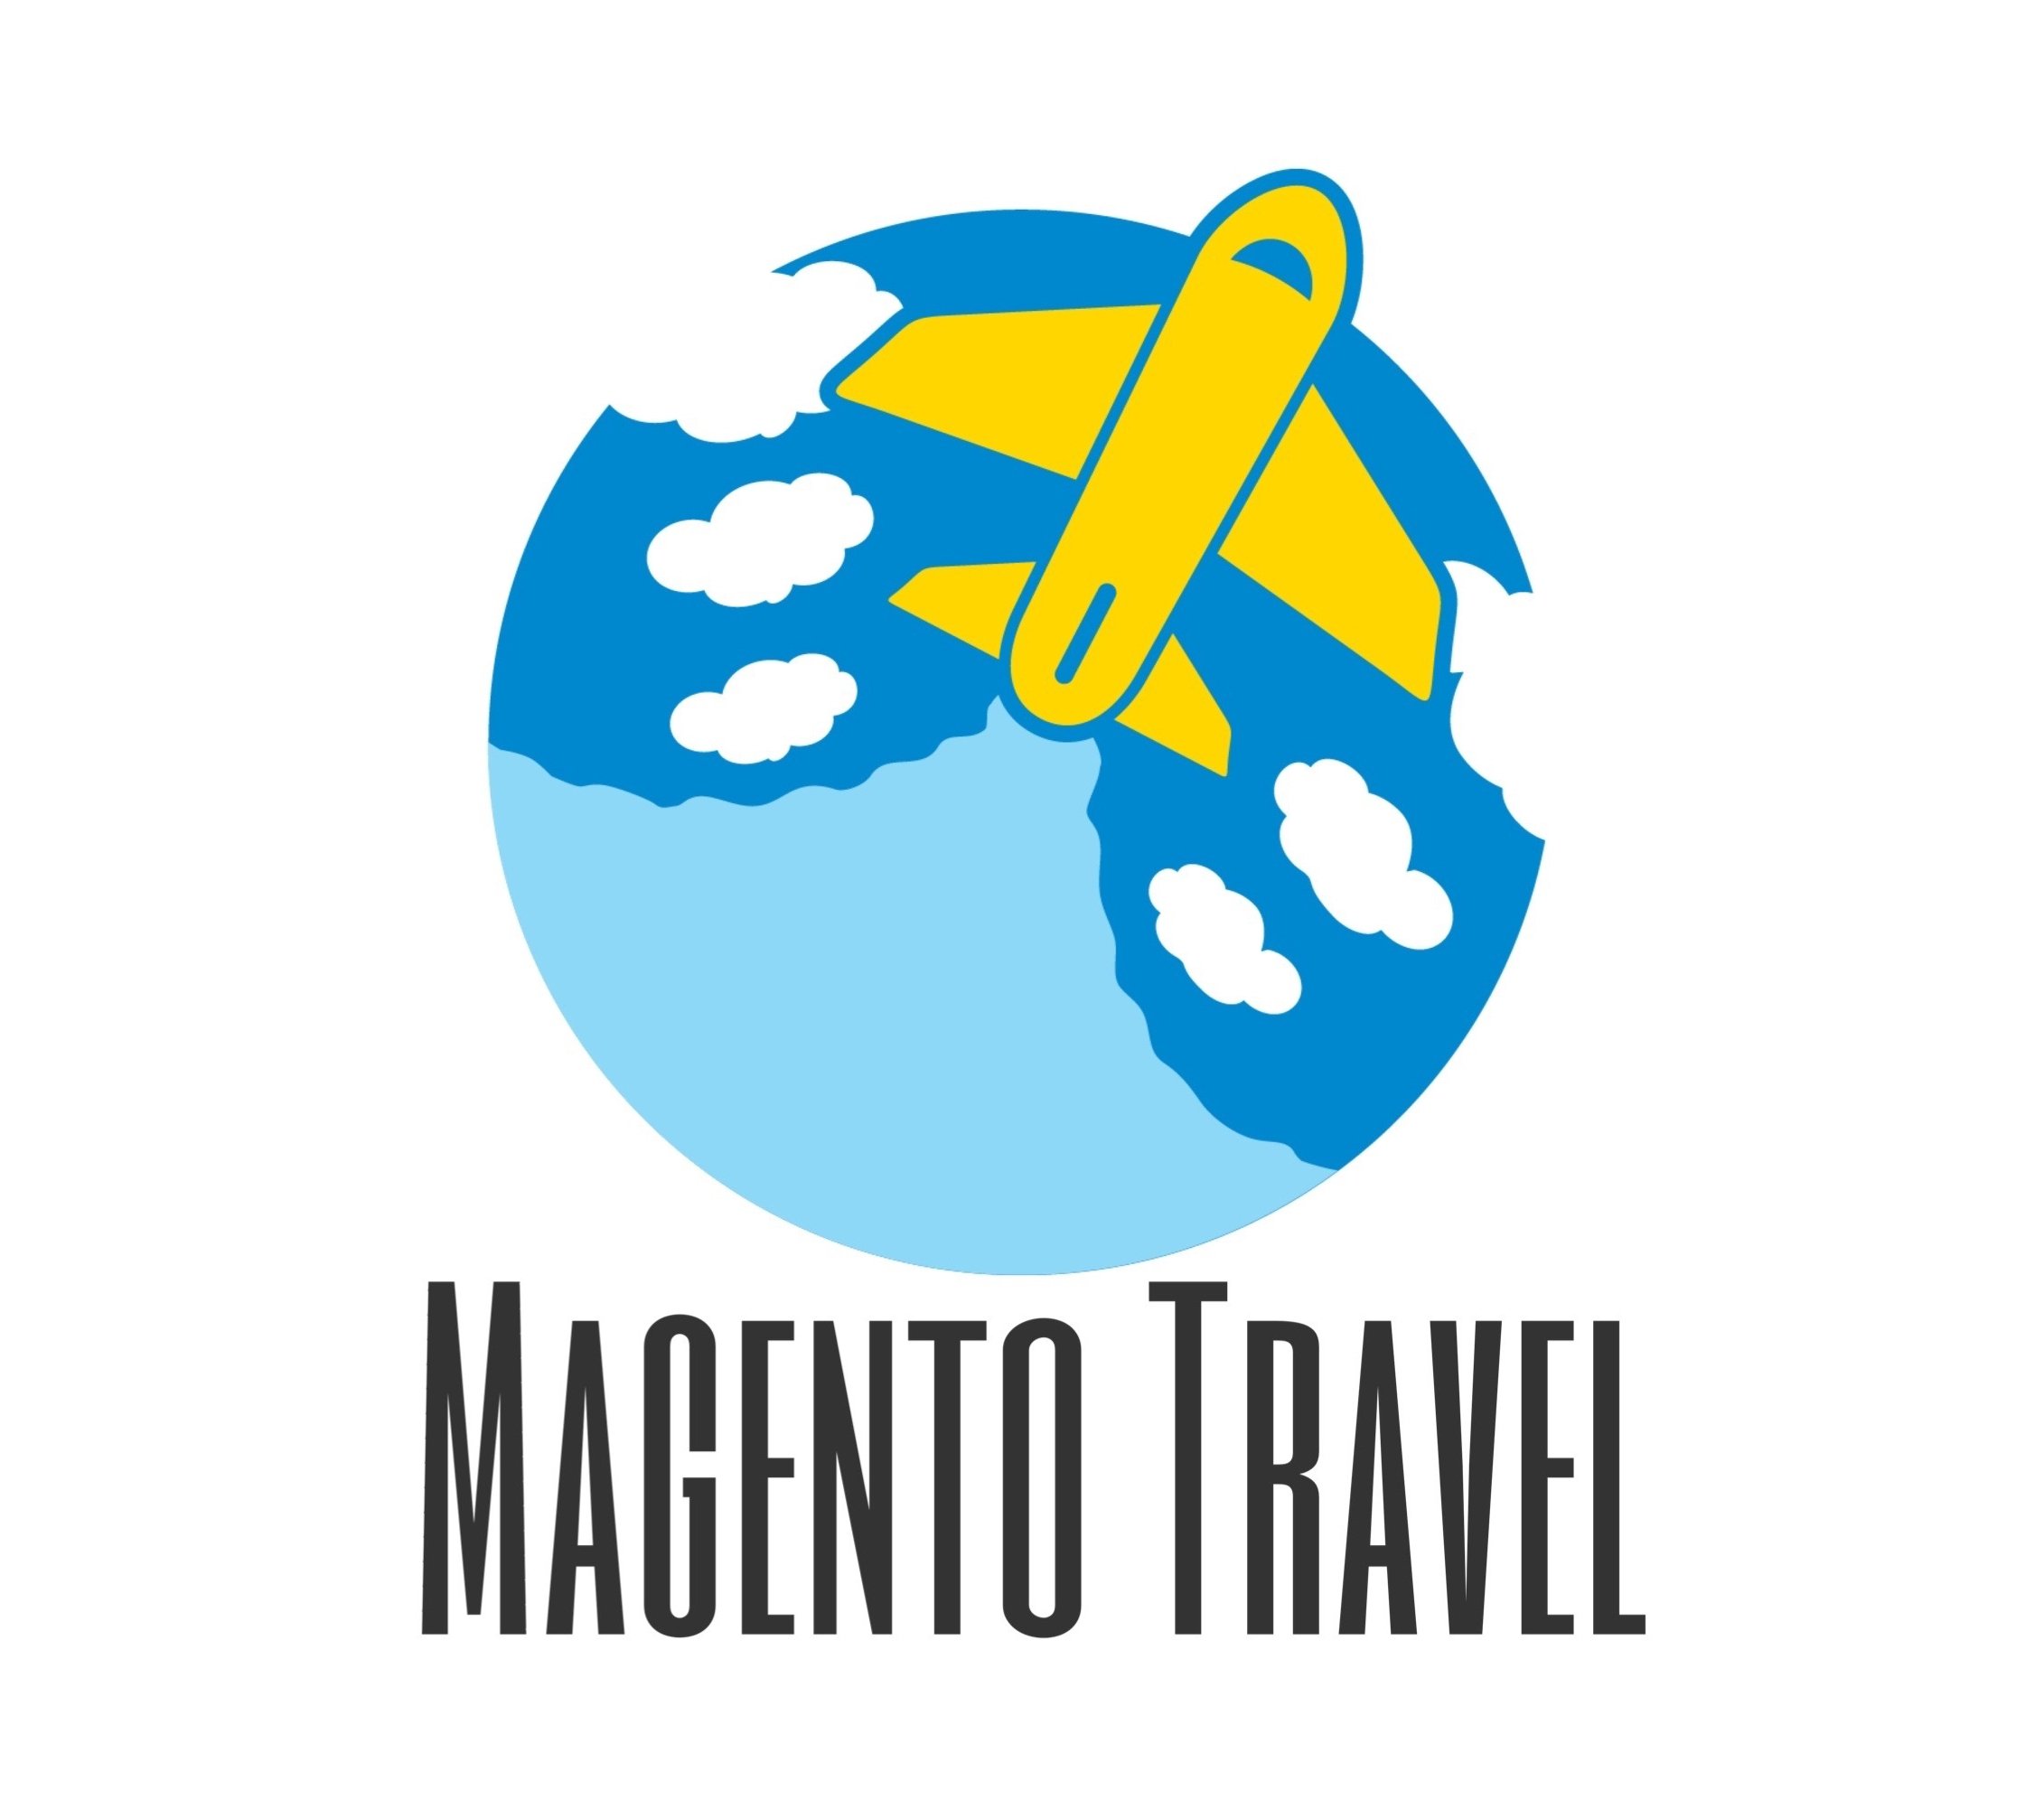 Magento Travel è un'agenzia di turismo estetico, specializzata in trapianto capelli incaricata per l'Italia dalla Clinica di Oktay Tuney WORLD PLAST HAIR CENTER